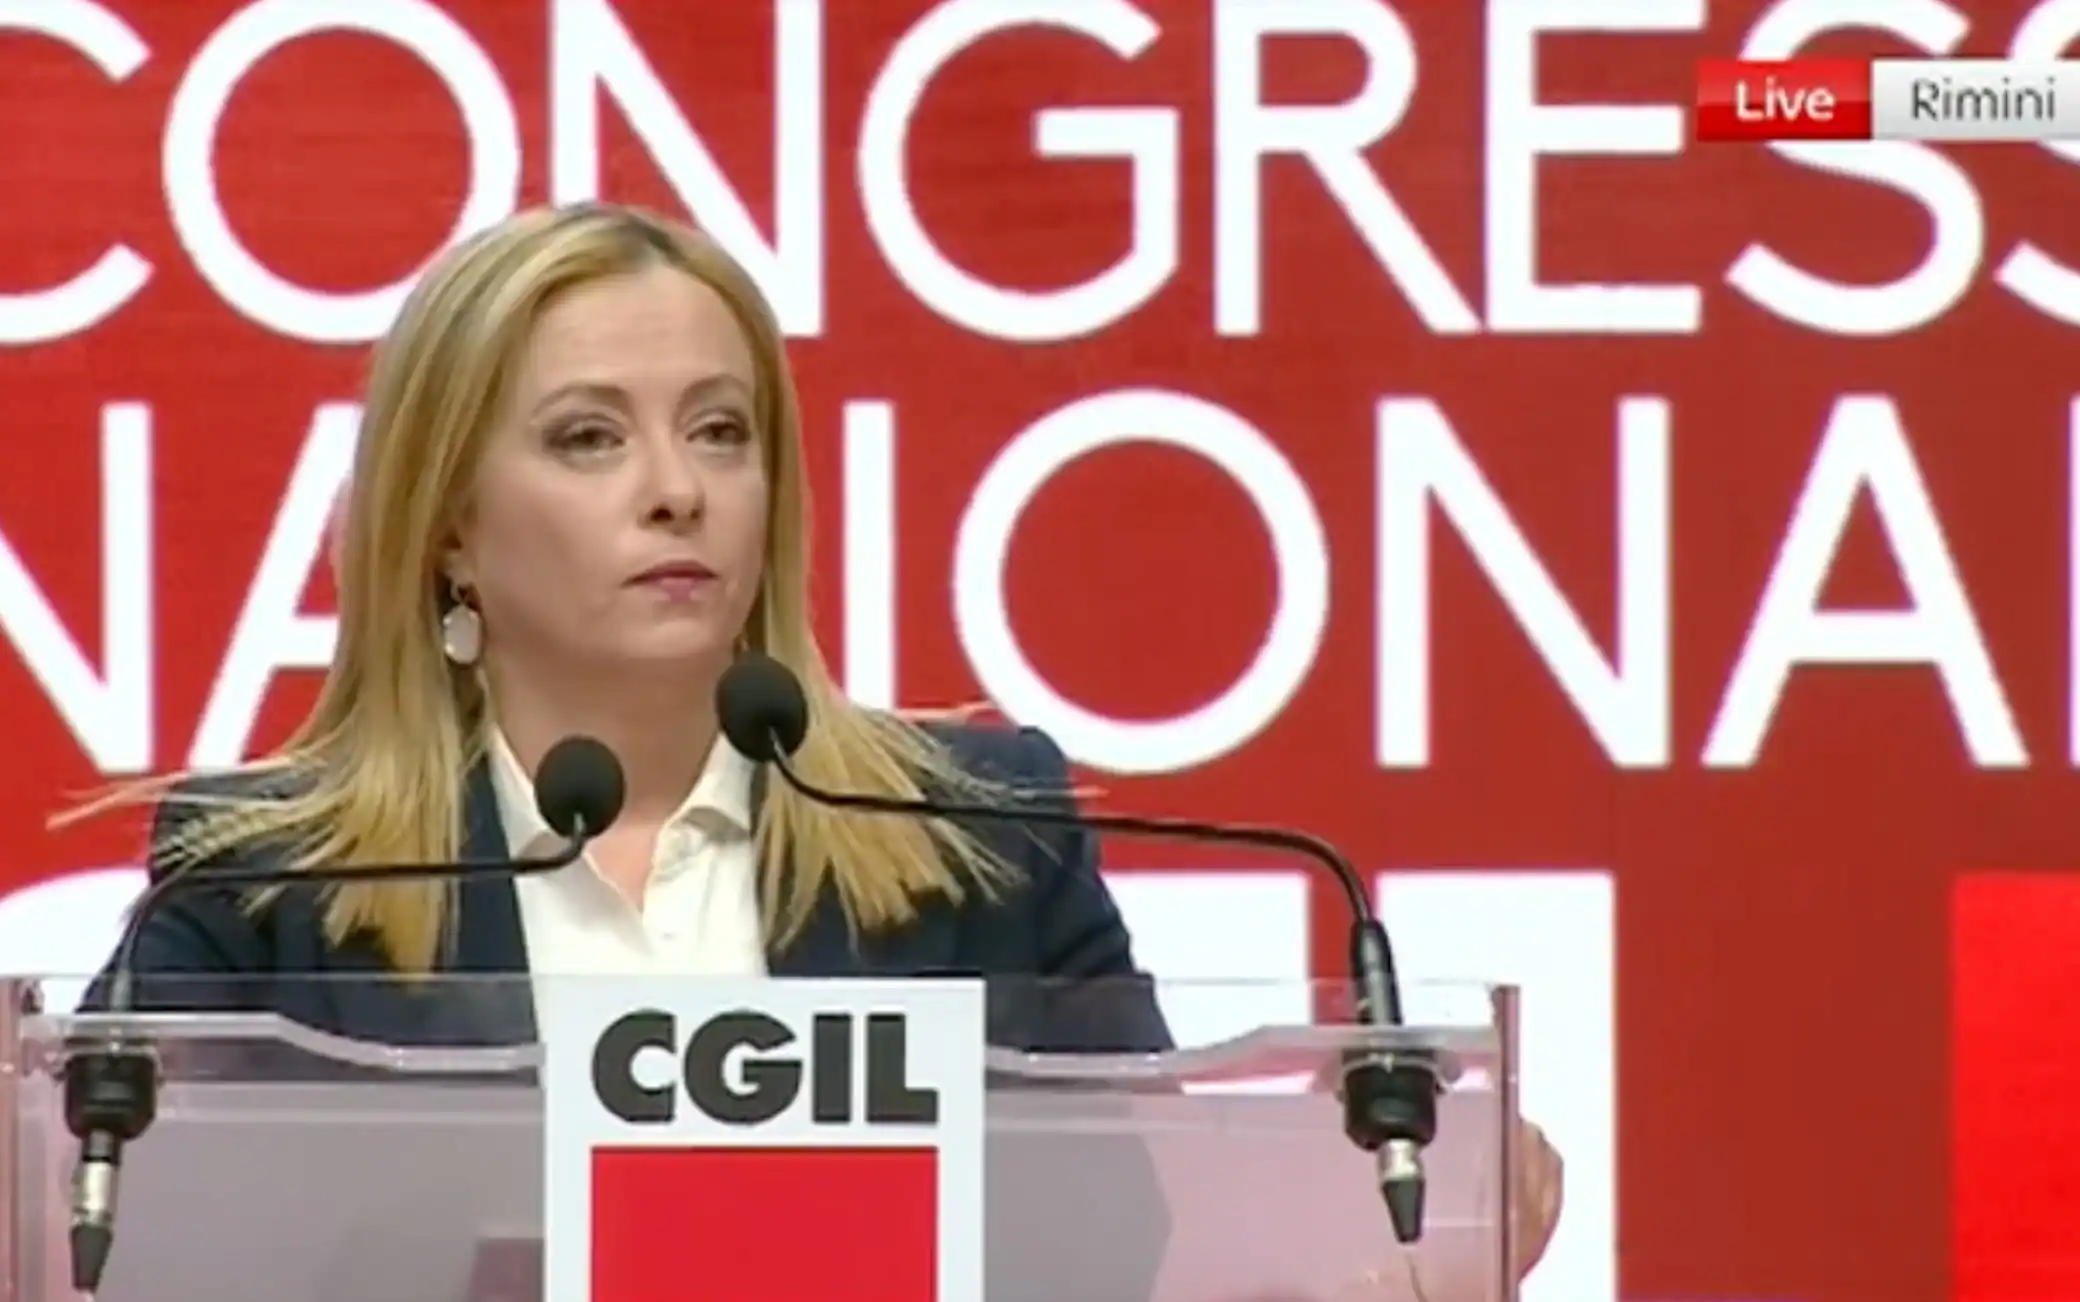 Giorgia Meloni contestata al congresso della Cgil: "Bella Ciao" e fischi, ecco il video